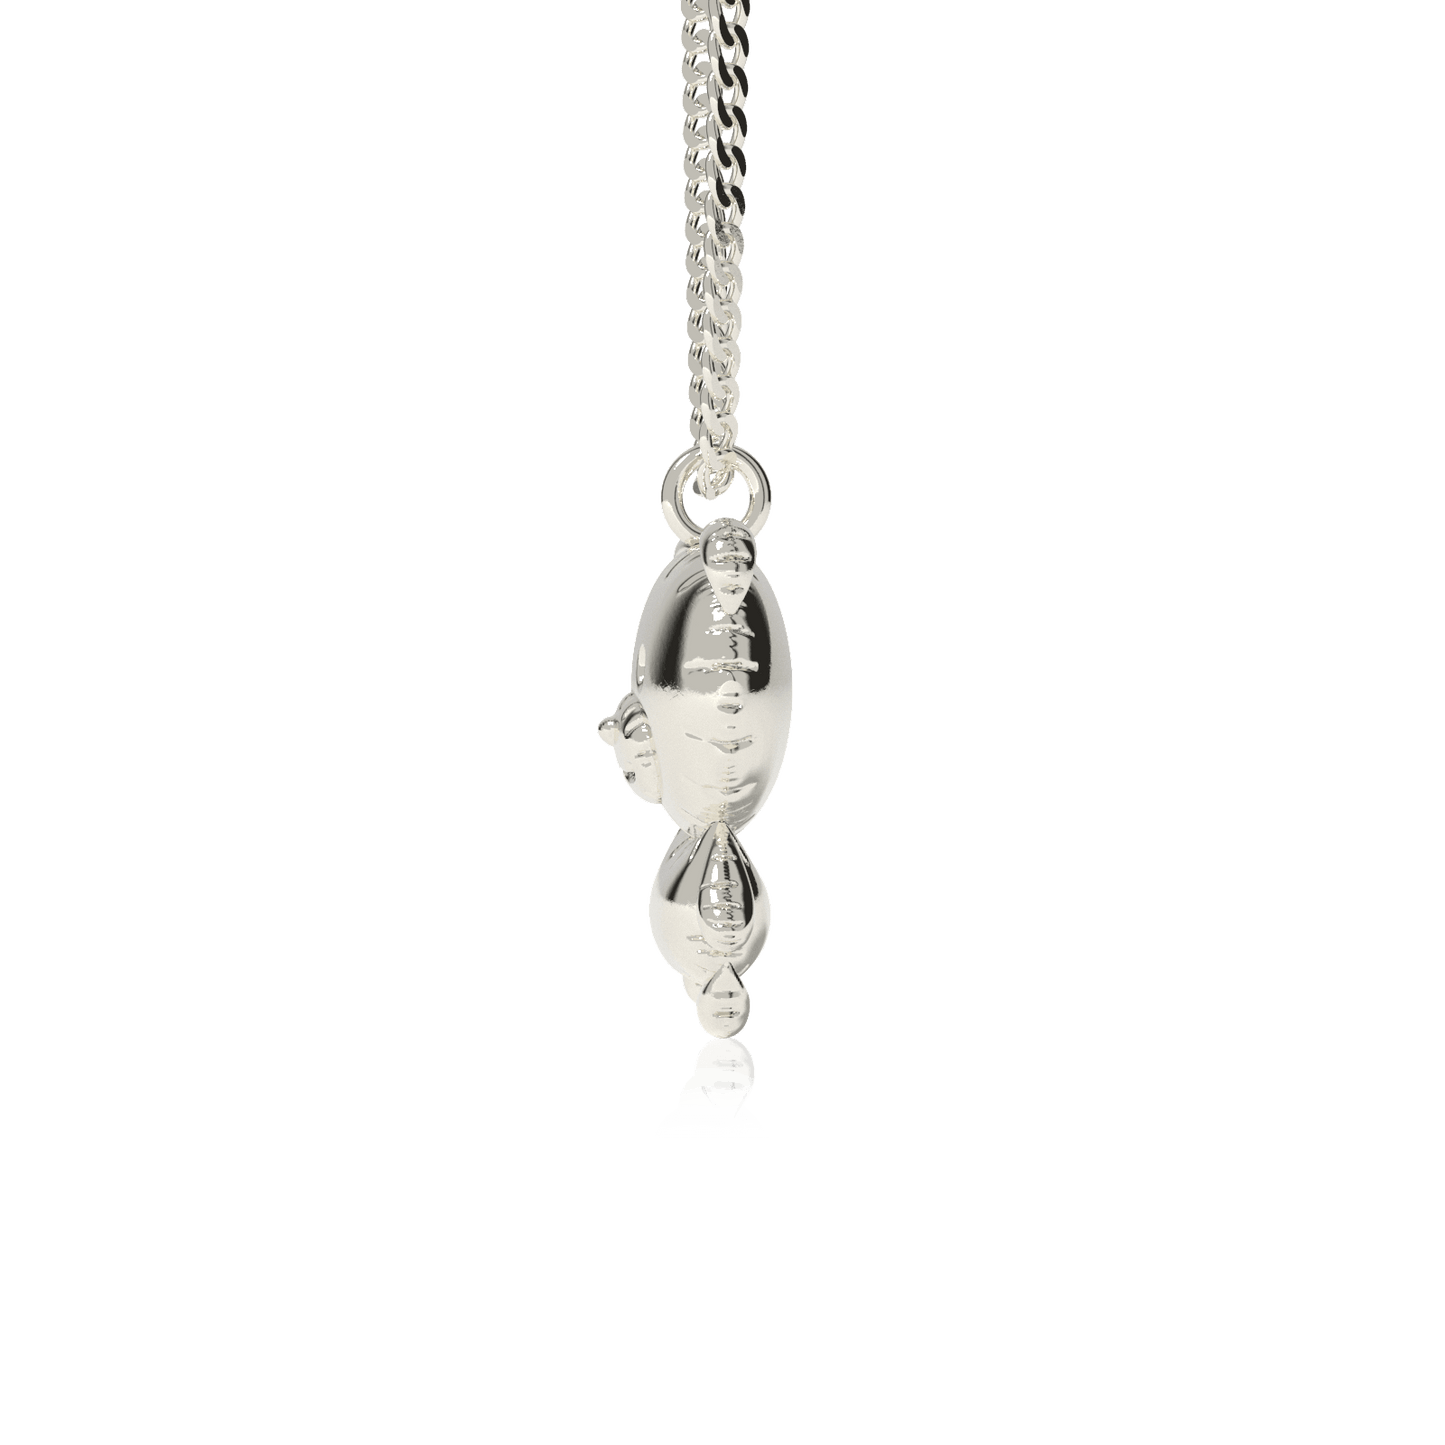 Balloon bear necklace - Silver 925